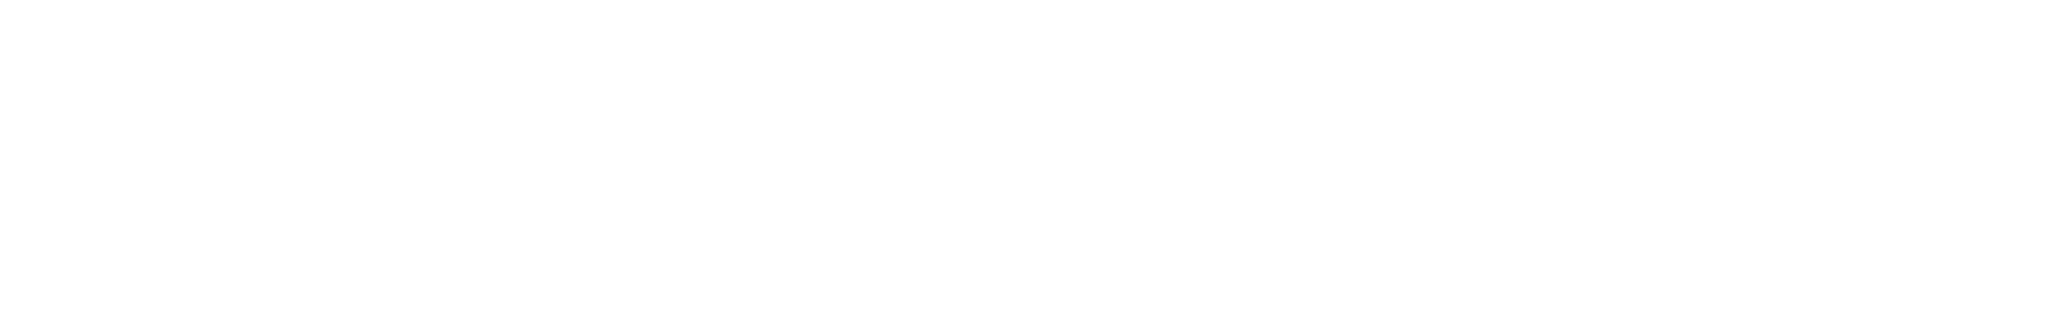 Gear-Patrol-Logotype-Display-size-white